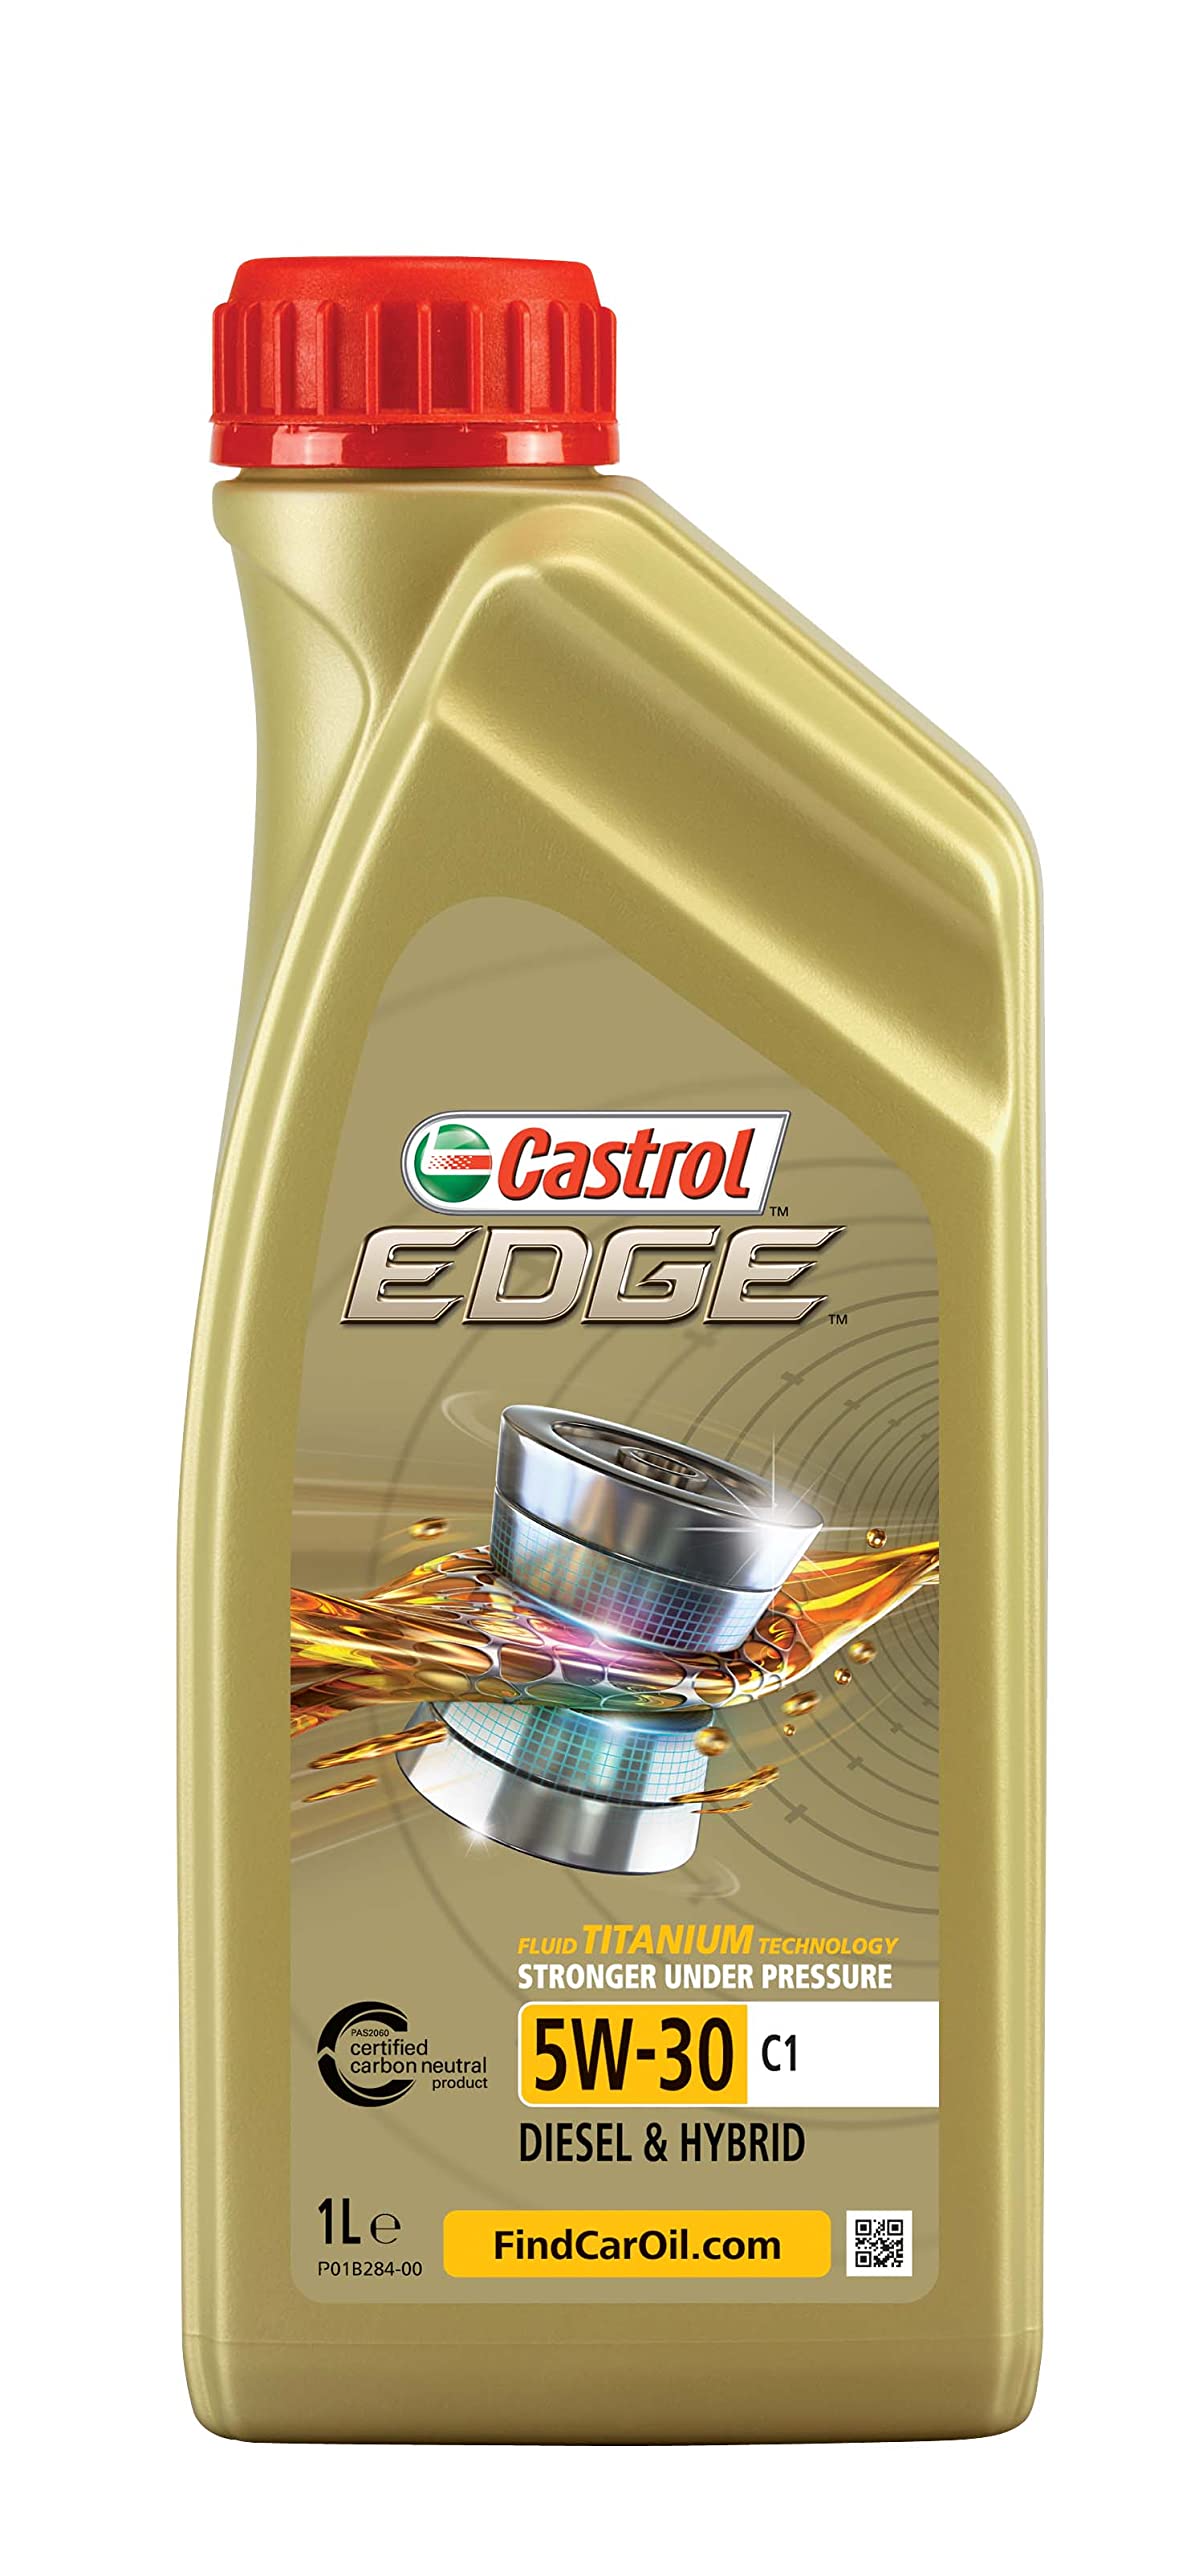 Castrol EDGE 5W-30 C1, 1 Liter von Castrol